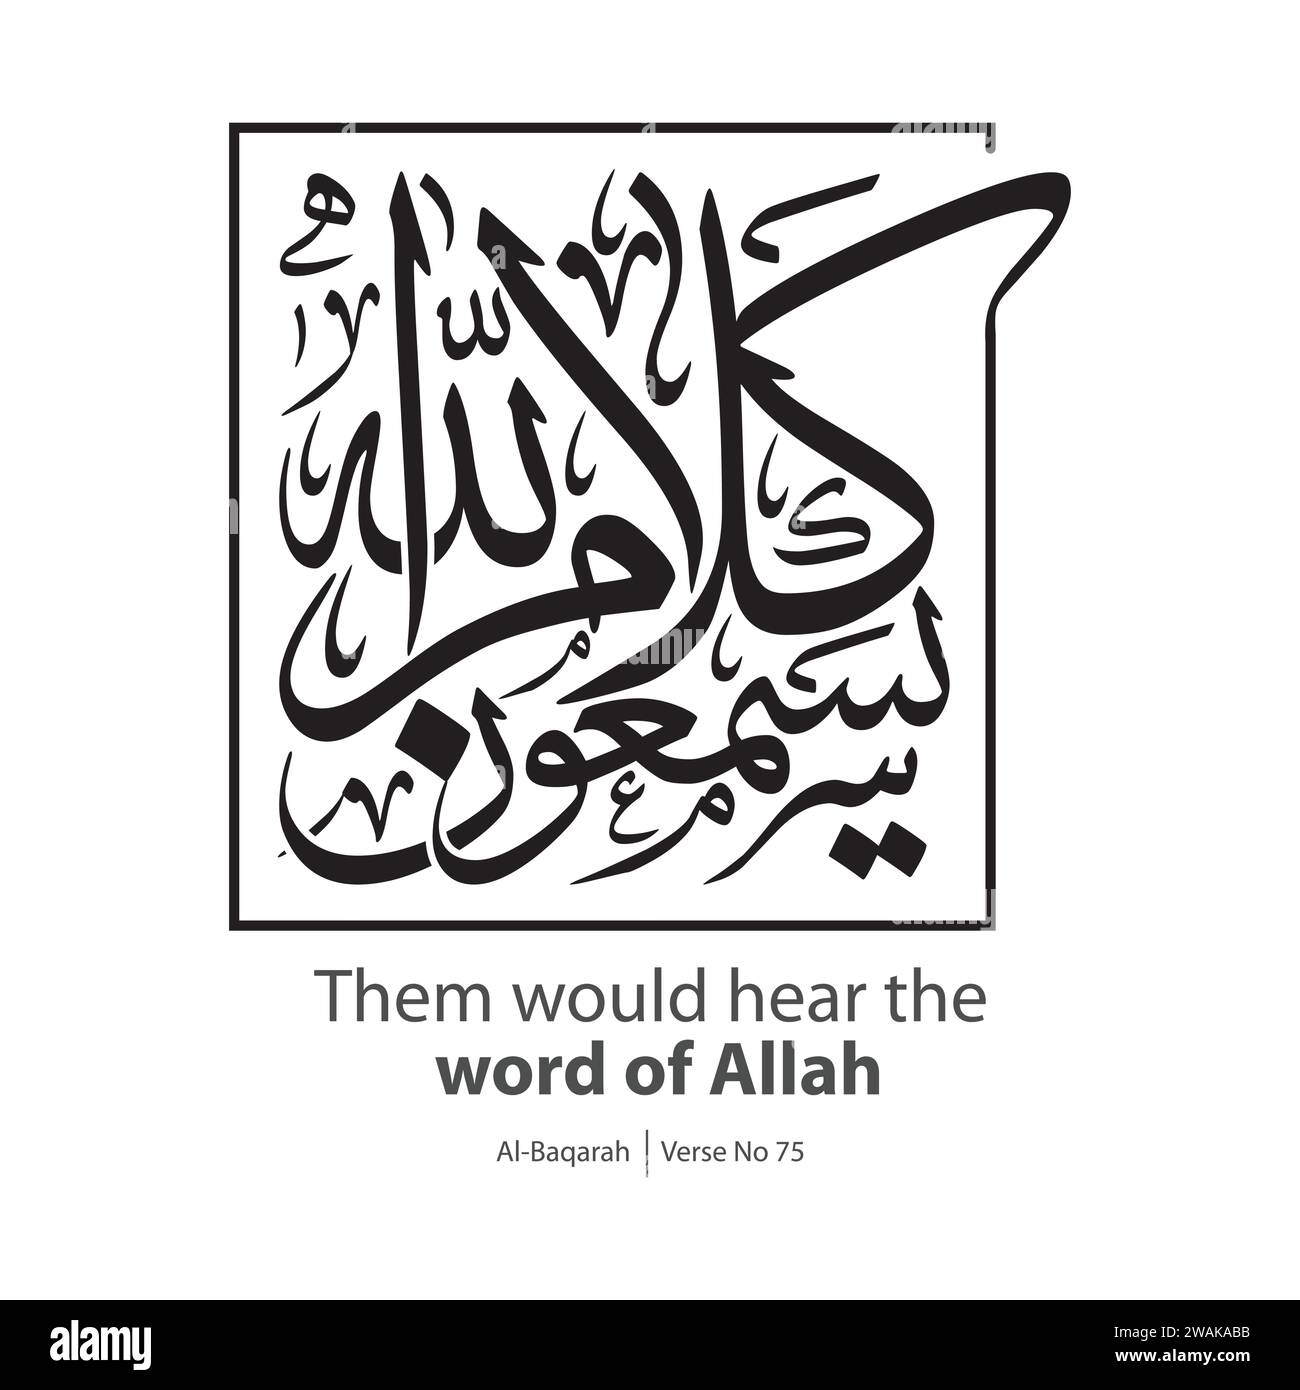 Parole d'Allah calligraphie, traduit en anglais comme, ils entendraient la parole d'Allah, verset n ° 75 d'Al-Baqarah Illustration de Vecteur